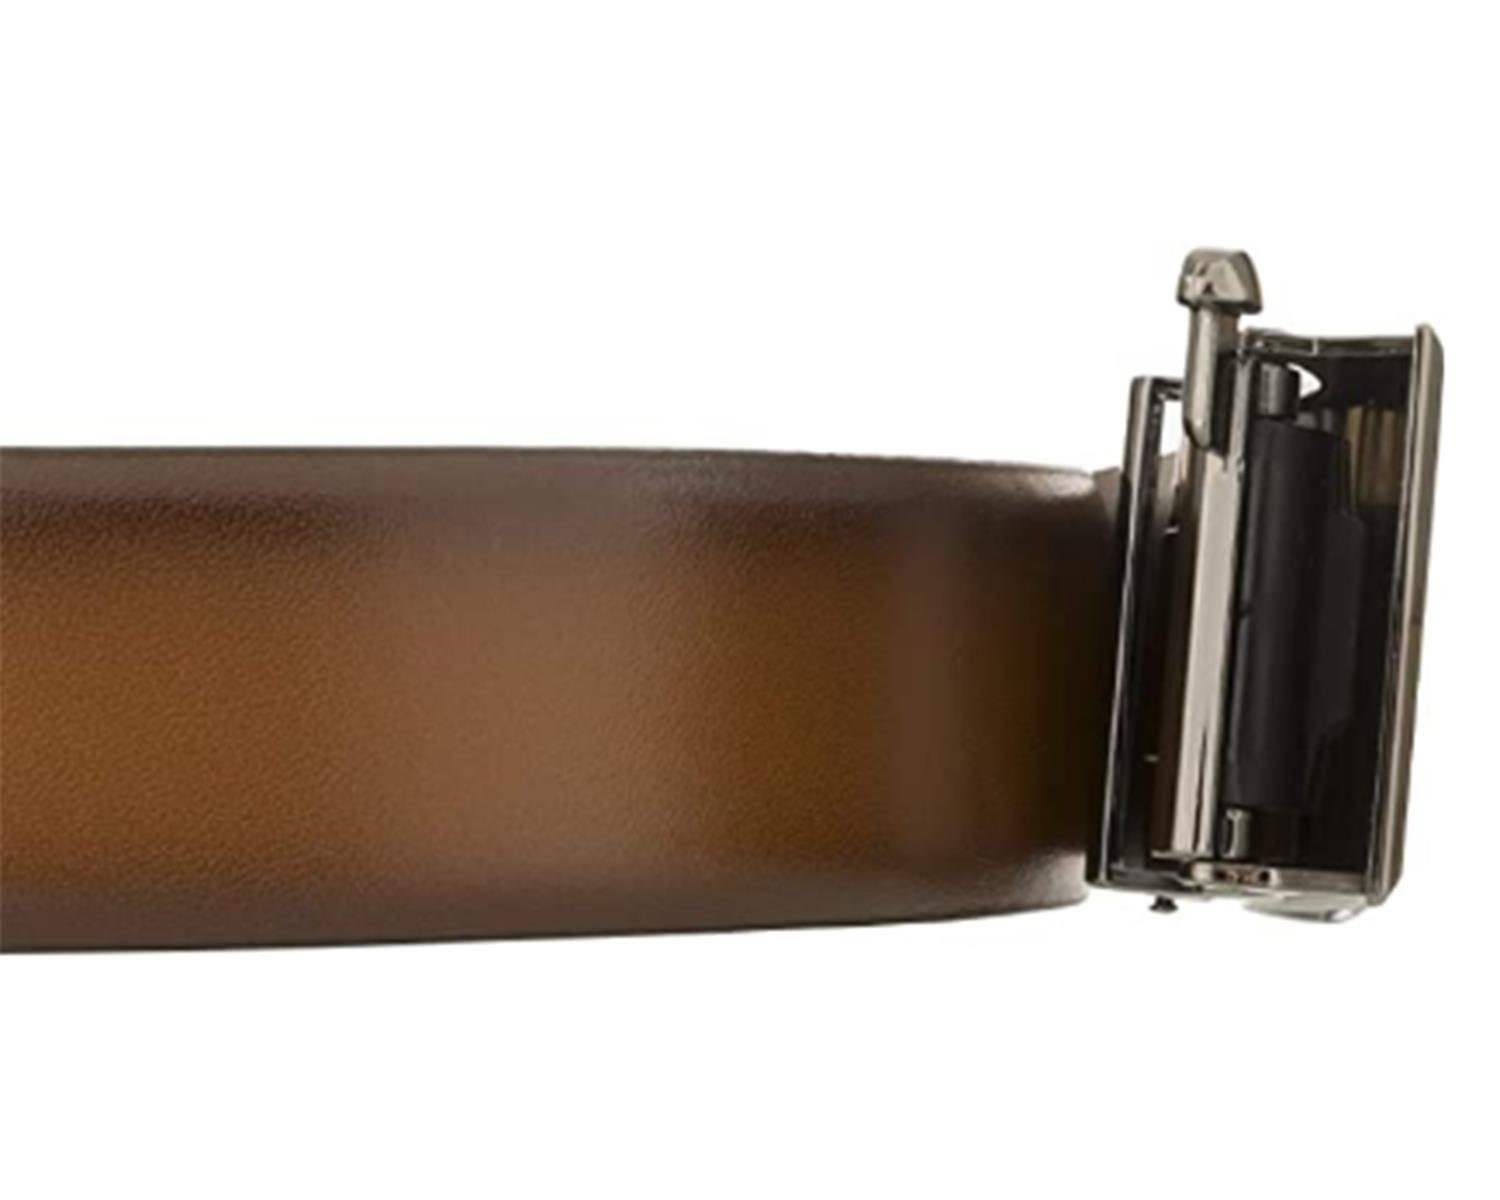 LLOYD Men’s Belts Kantenfinish, LLOYD-Automatic-Gürtel kürzbar, cognac 35mm, Ledergürtel bombiert